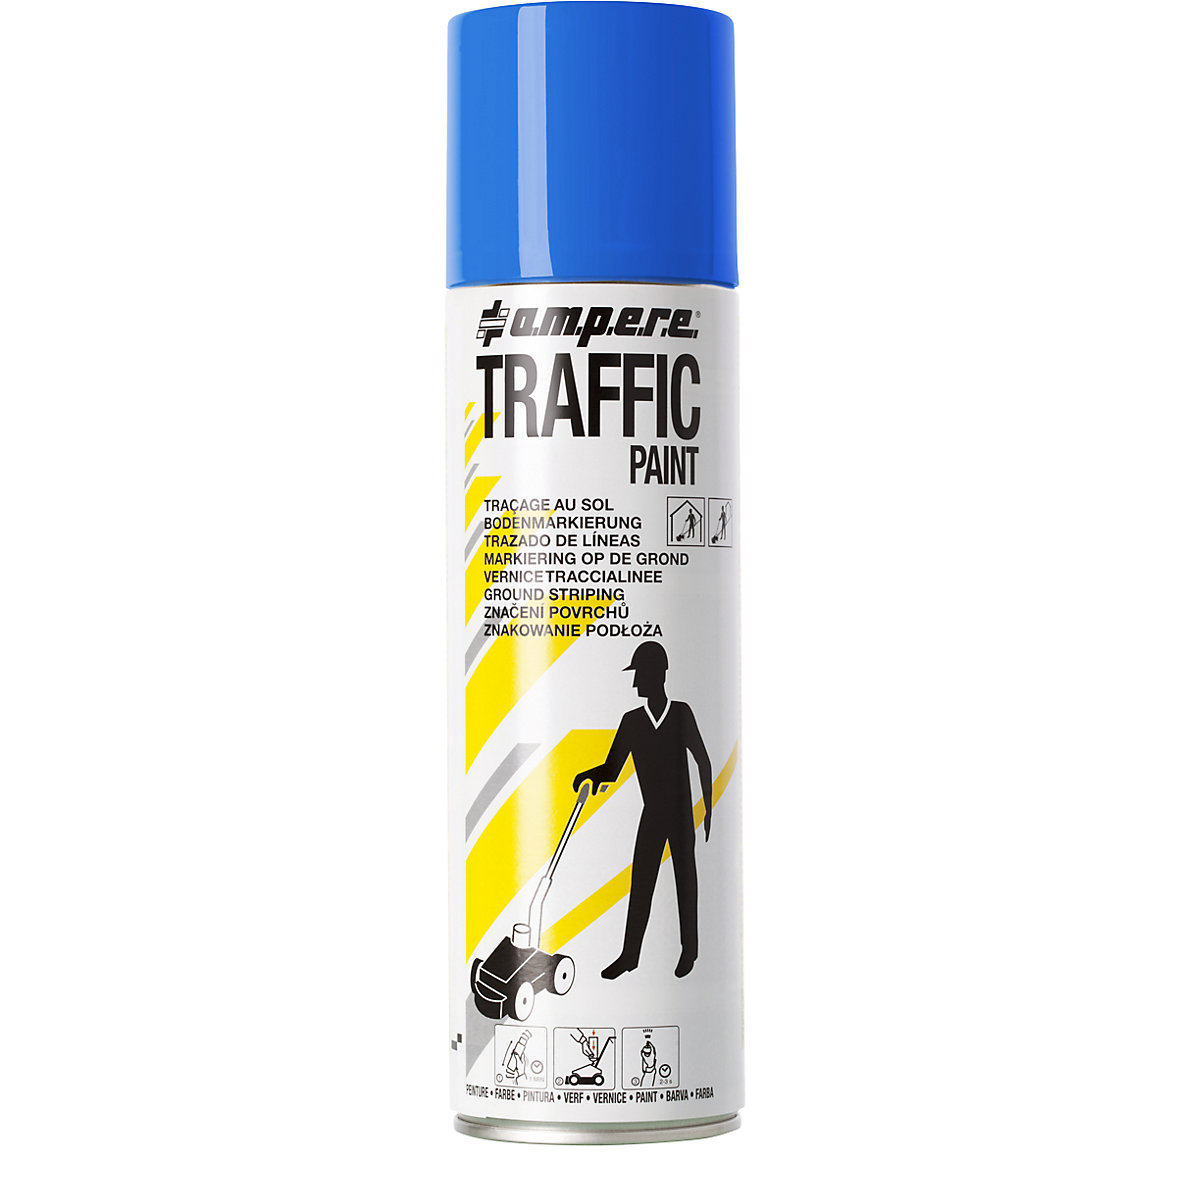 Peinture de marquage Traffic Paint® – Ampere, contenu 500 ml, lot de 12 aérosols, bleu-6